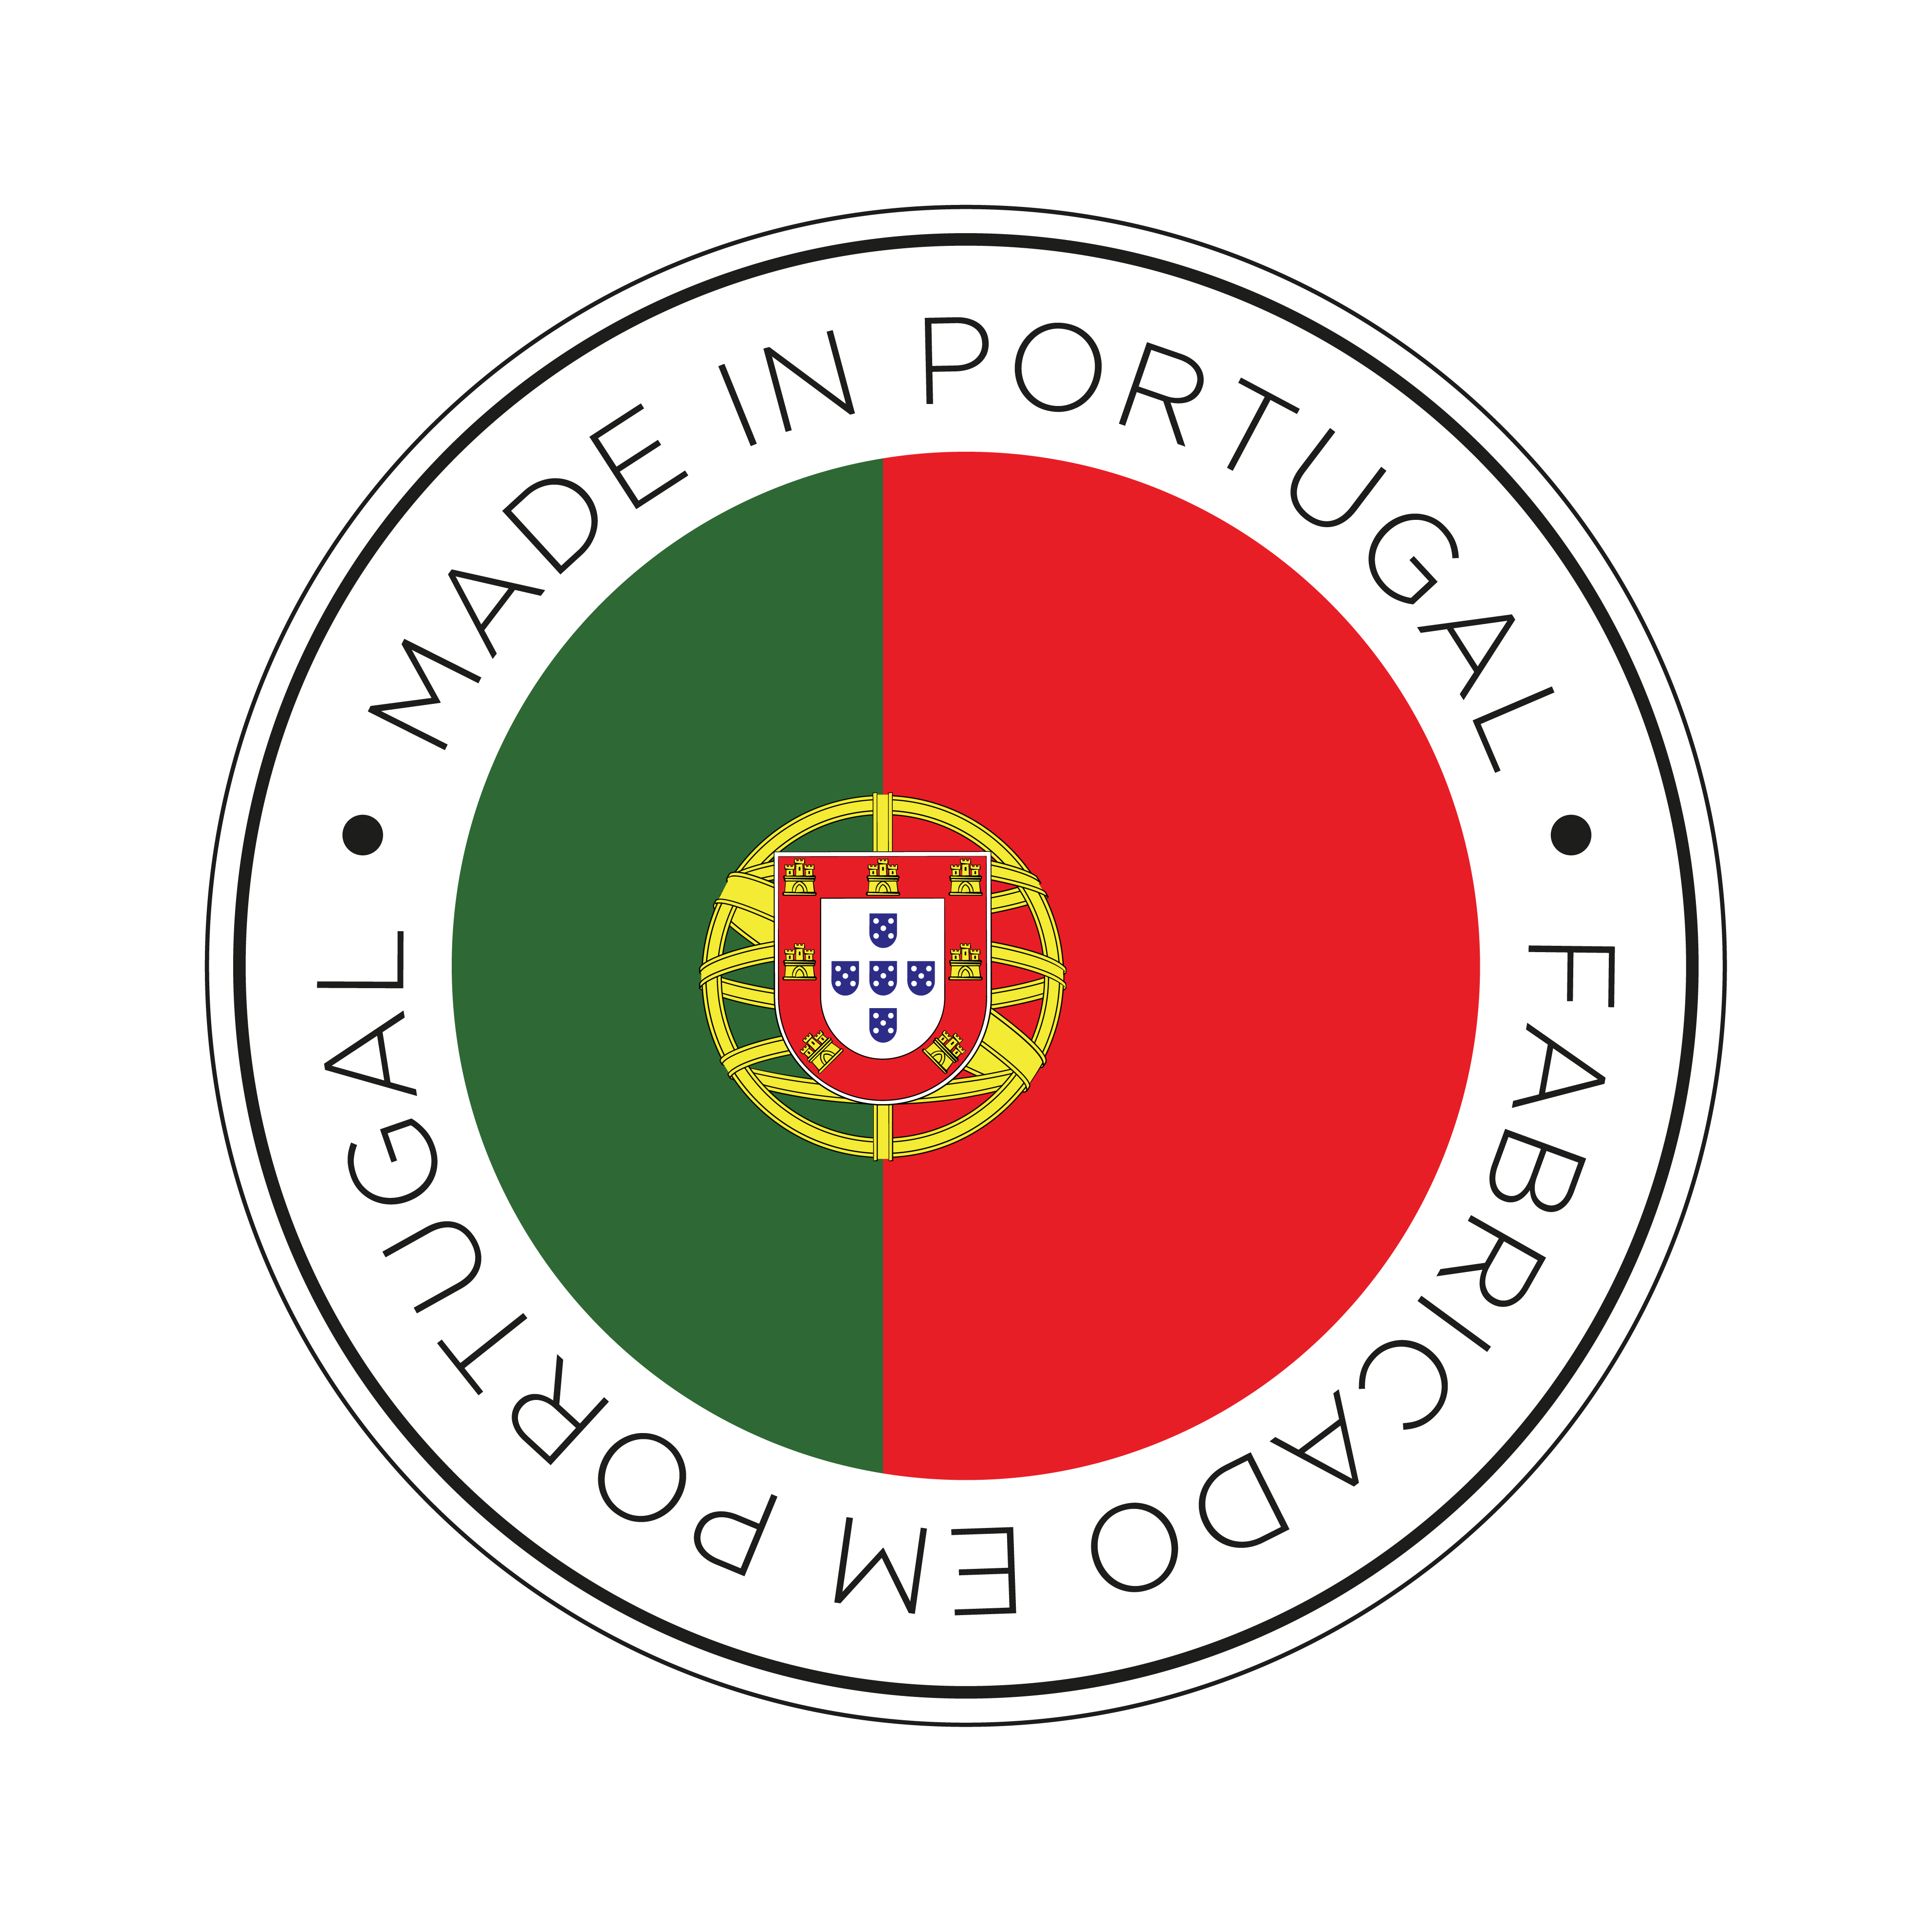 Fabriqué au Portugal